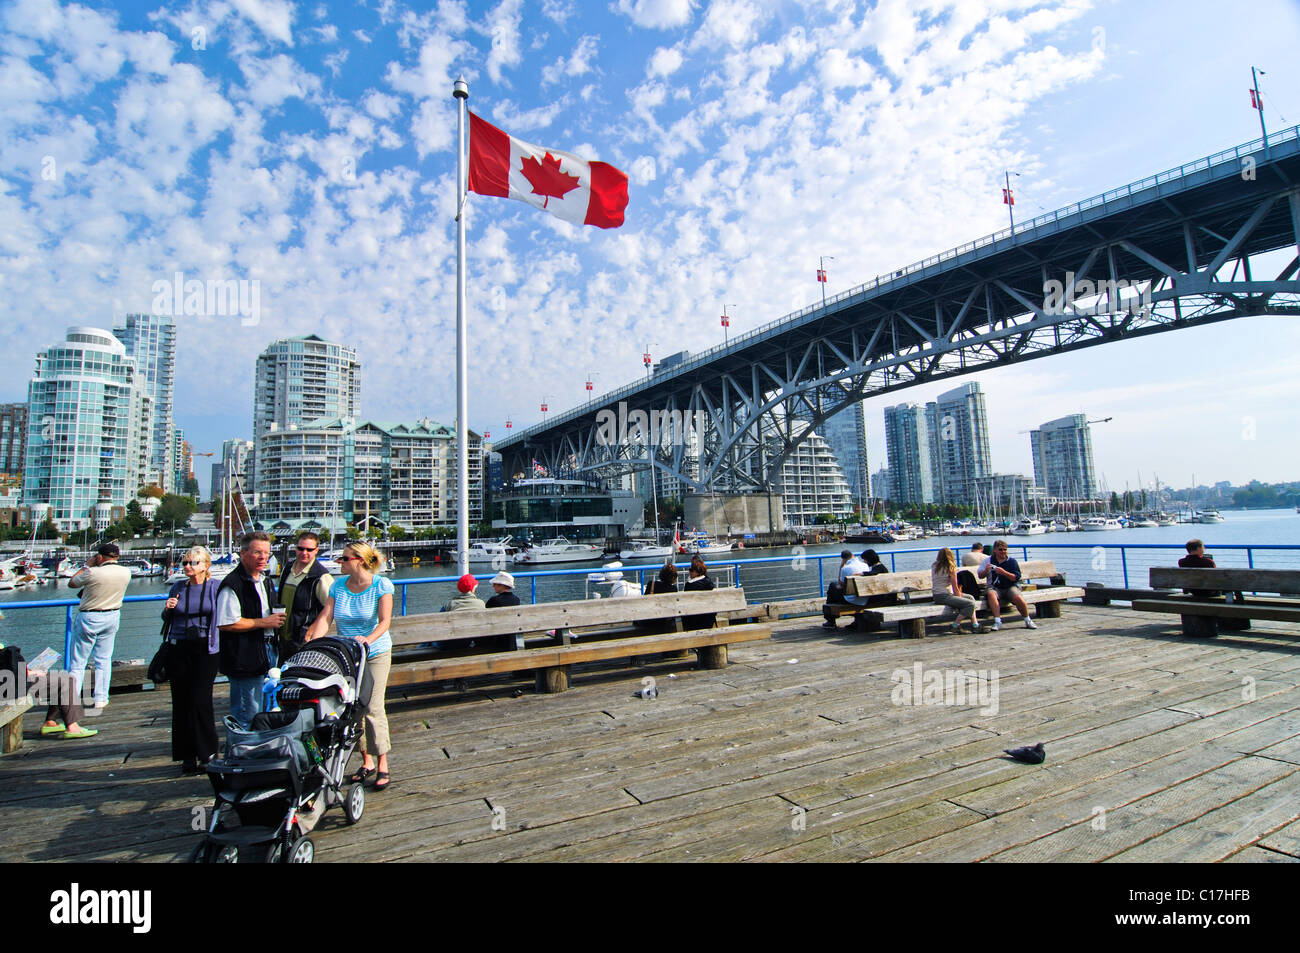 Horizonte de Vancouver, vista de la isla de Granville, la bandera Canadiense, Granville Street Bridge, Vancouver, British Columbia, Canadá Foto de stock